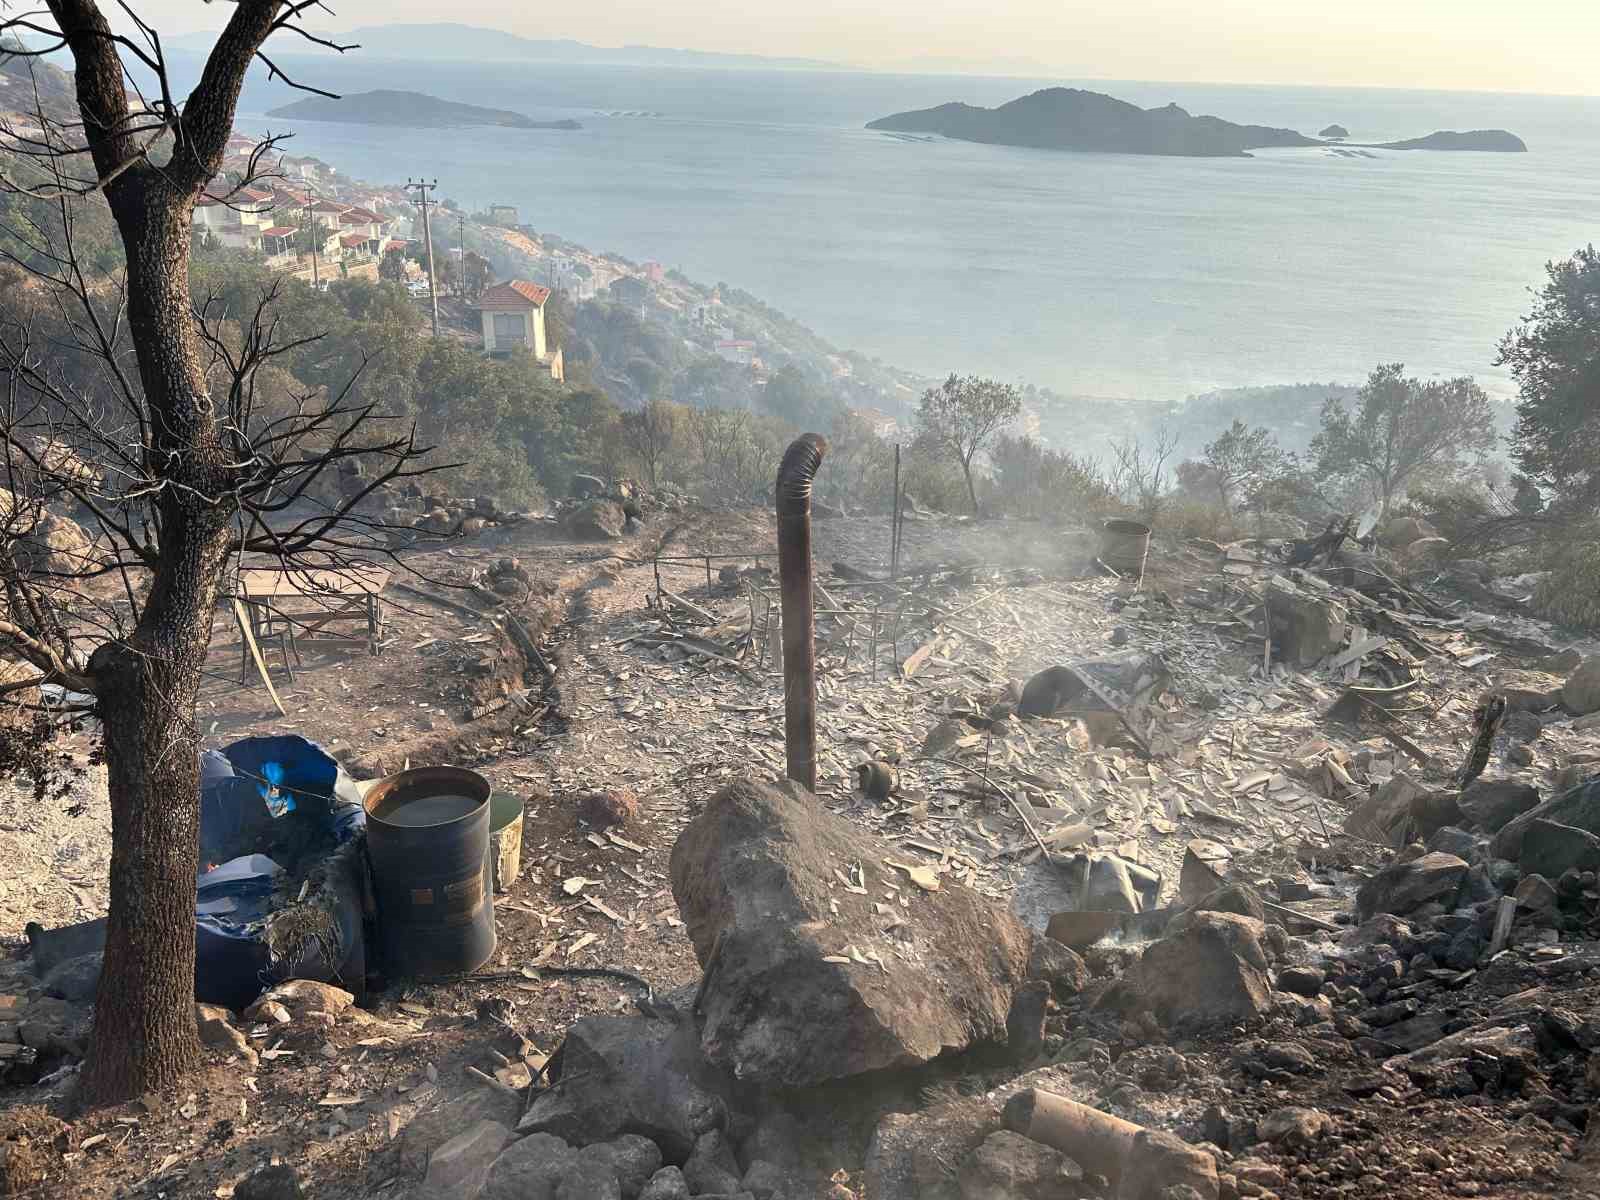 İzmir’in Dikili ilçesinde yerleşim yerlerine yaklaşan orman yangınında zeytin ağaçlarının da bulunduğu bahçedeki bağ evi yandı. Bahçenin sahibi Mehmet Karaçam, “10 yıllık emeğim 10 saniyede yok oldu” dedi.